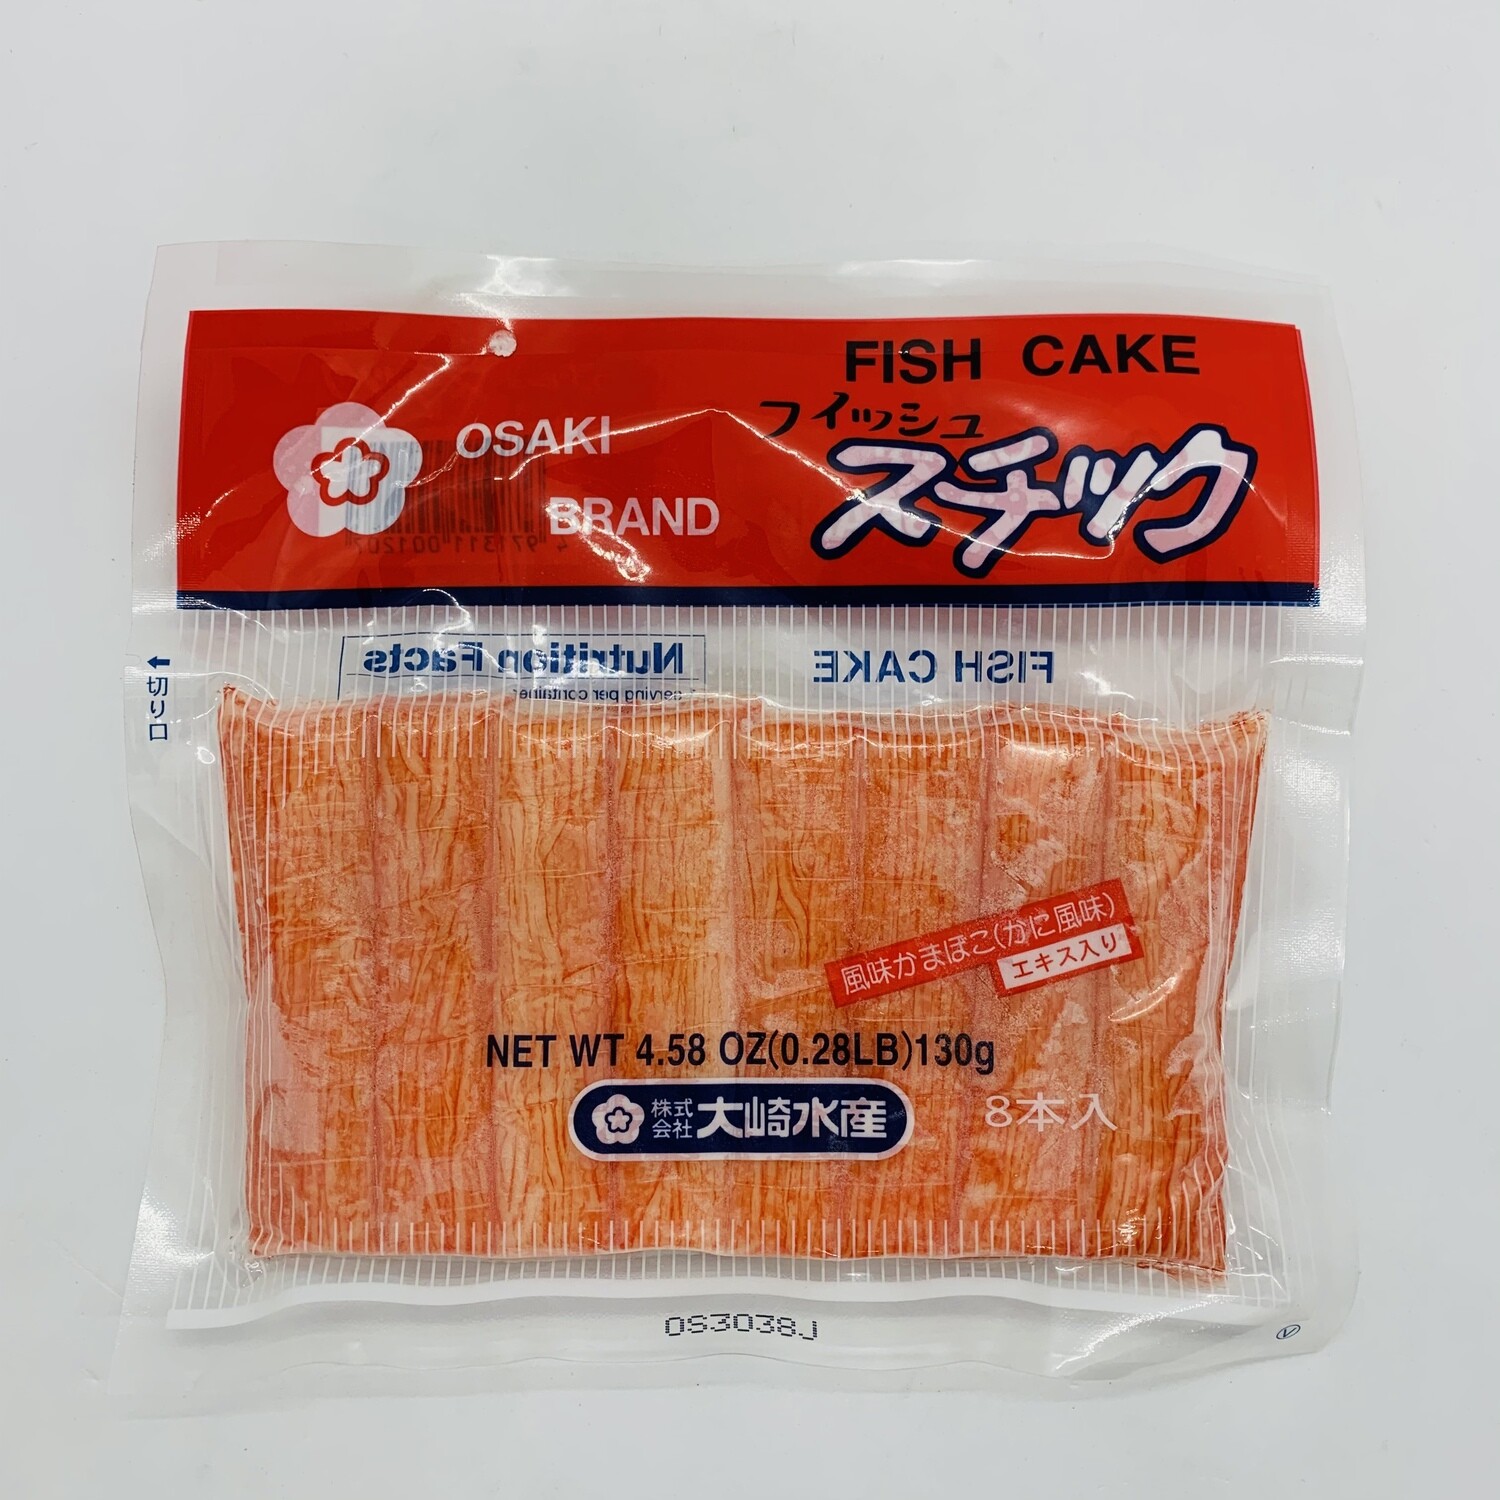 OSAKI Fishi Cake Immitation Crab 130g